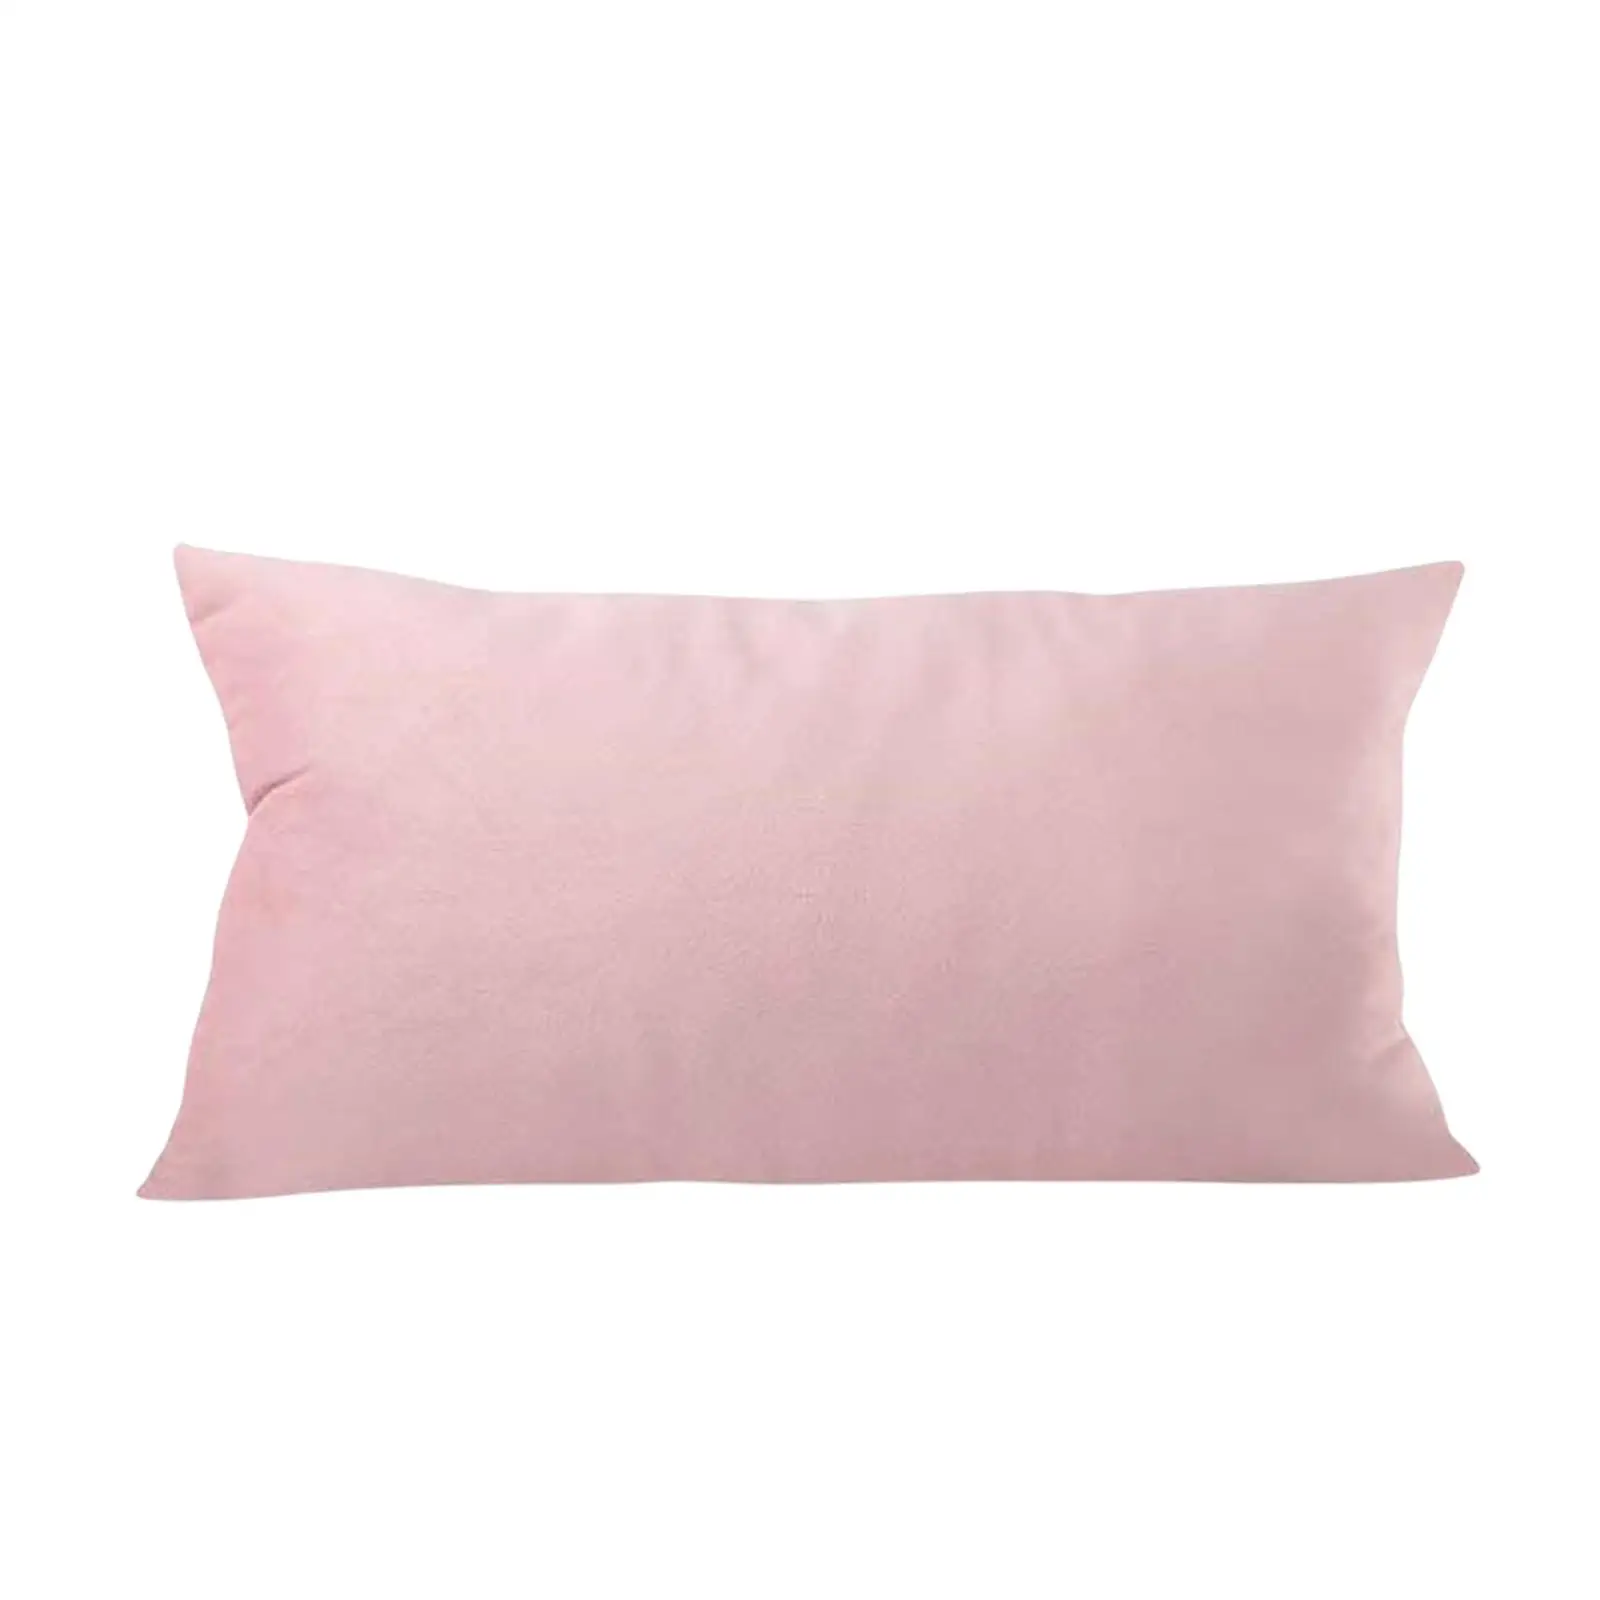 Soft Head Cushion Pillow with pillow Lumbar Pillows for Folding Lounger Garden Terrace recliner Sling Chair Beach Headrest